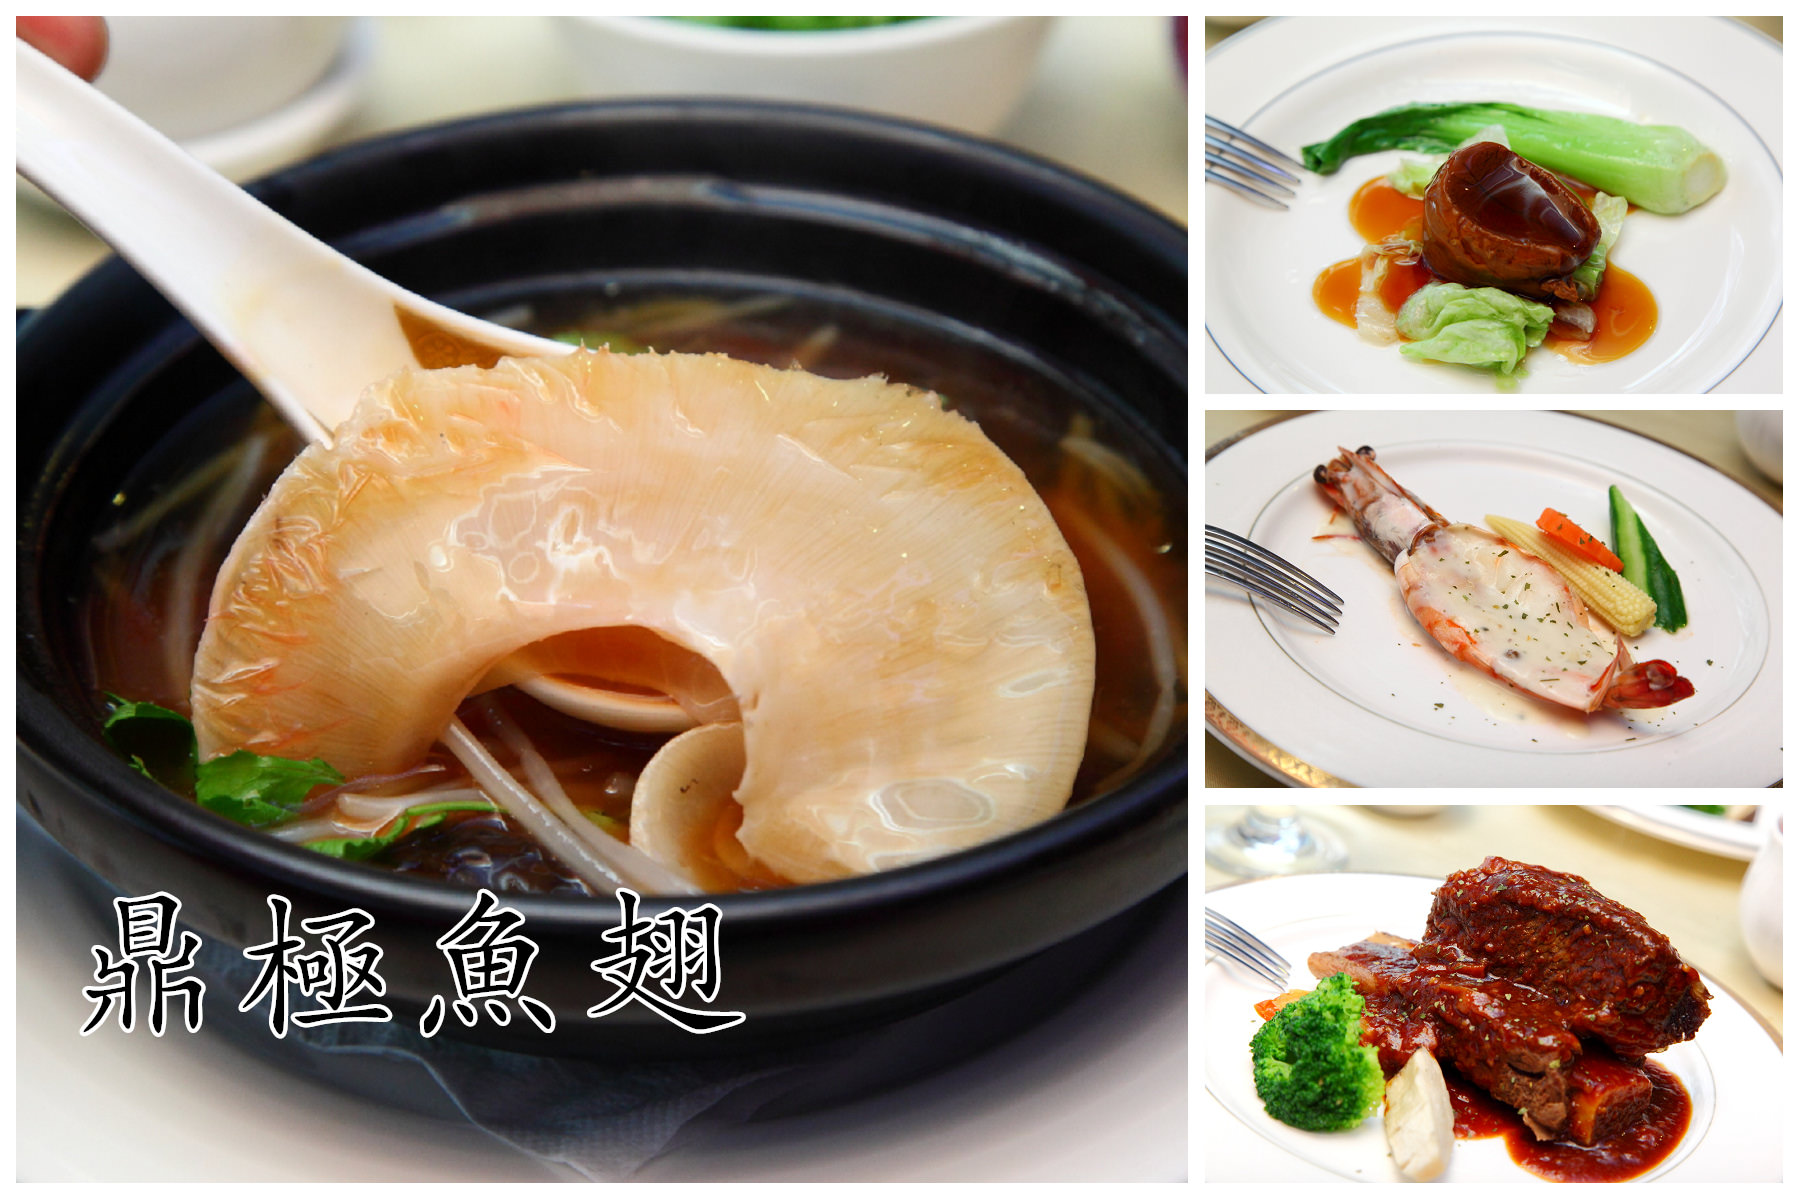 邀稿,台北魚翅餐廳,中山區魚翅餐廳,台北頂級餐廳,林森北路魚翅餐廳 @大手牽小手。玩樂趣